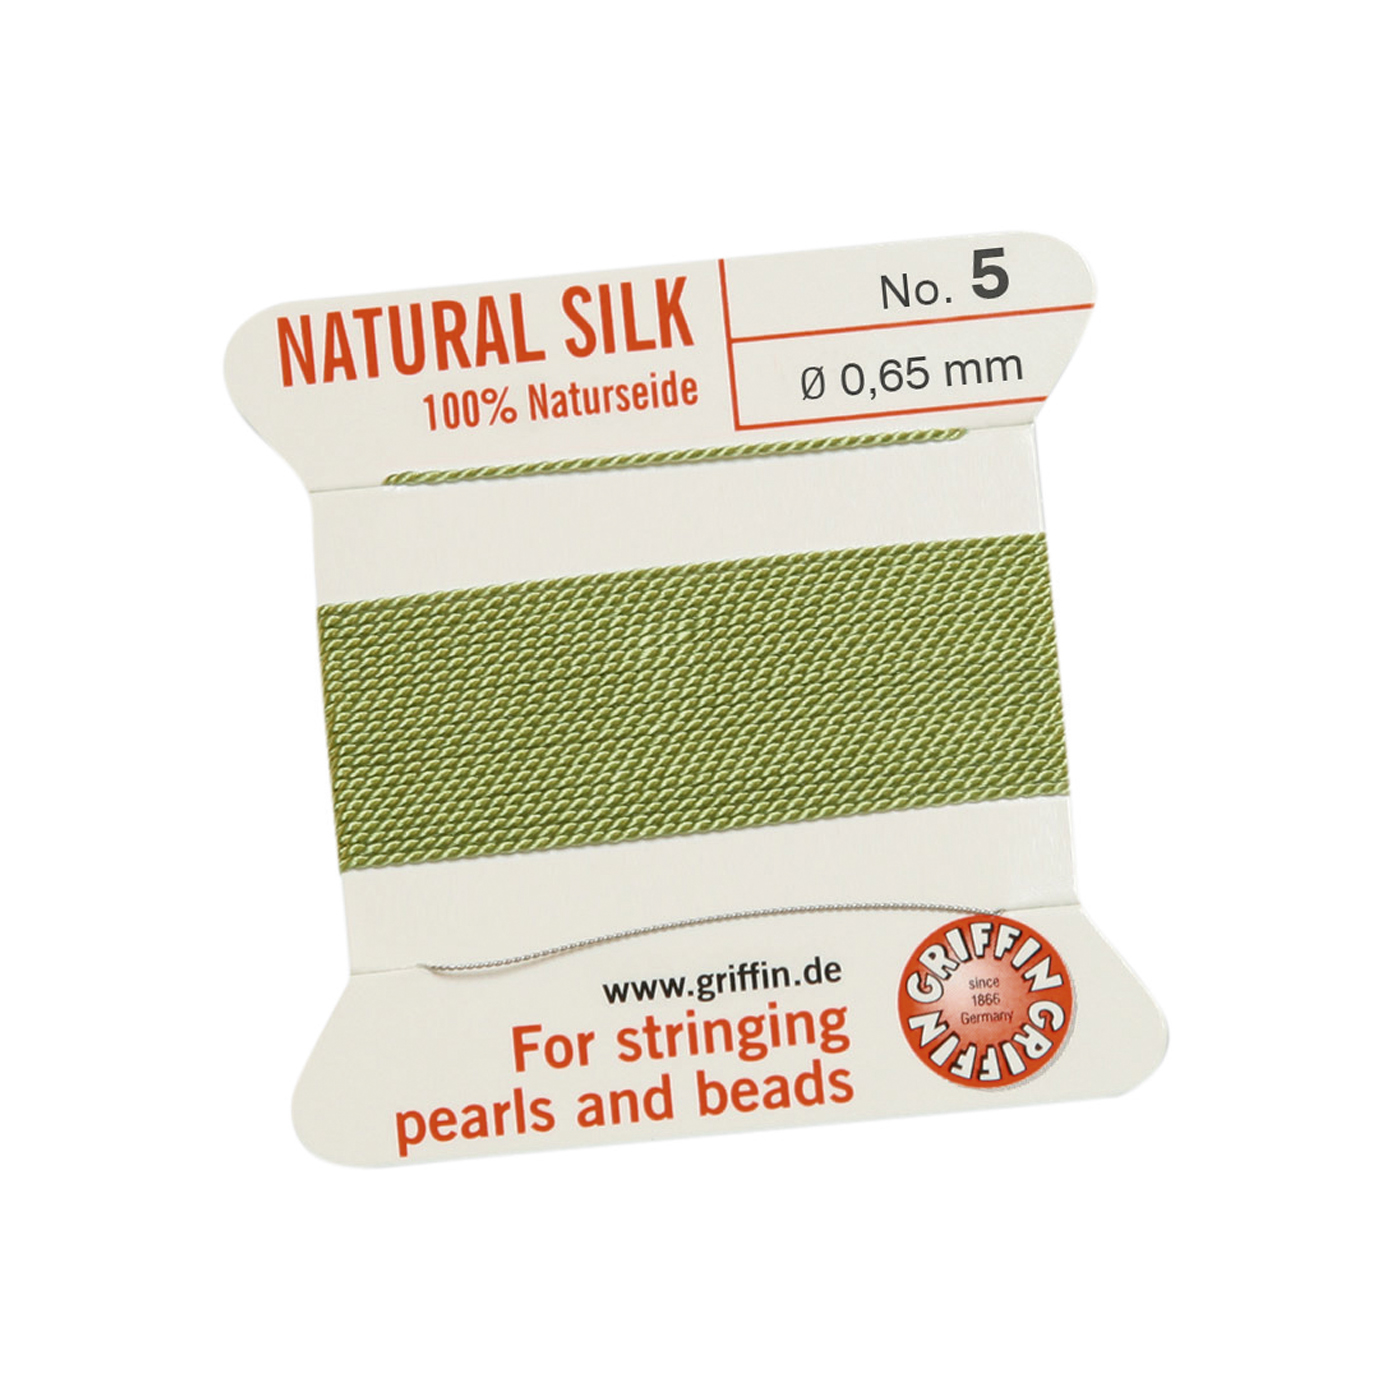 Bead Cord 100% Natural Silk, Jade Green, No. 5 - 2 m